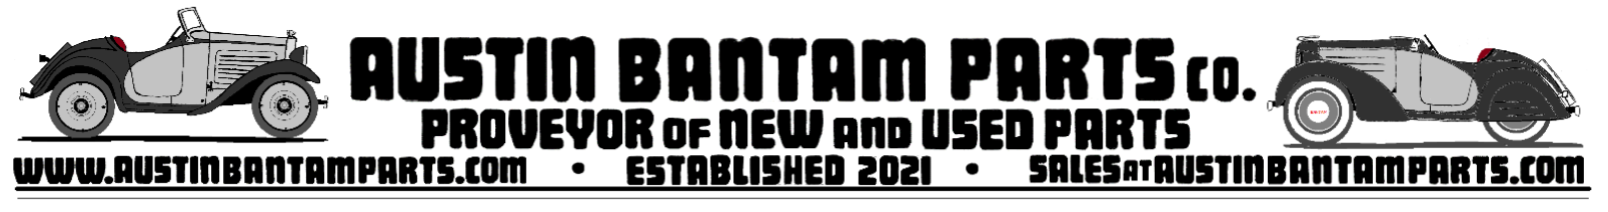 Austin Bantam Parts Co.